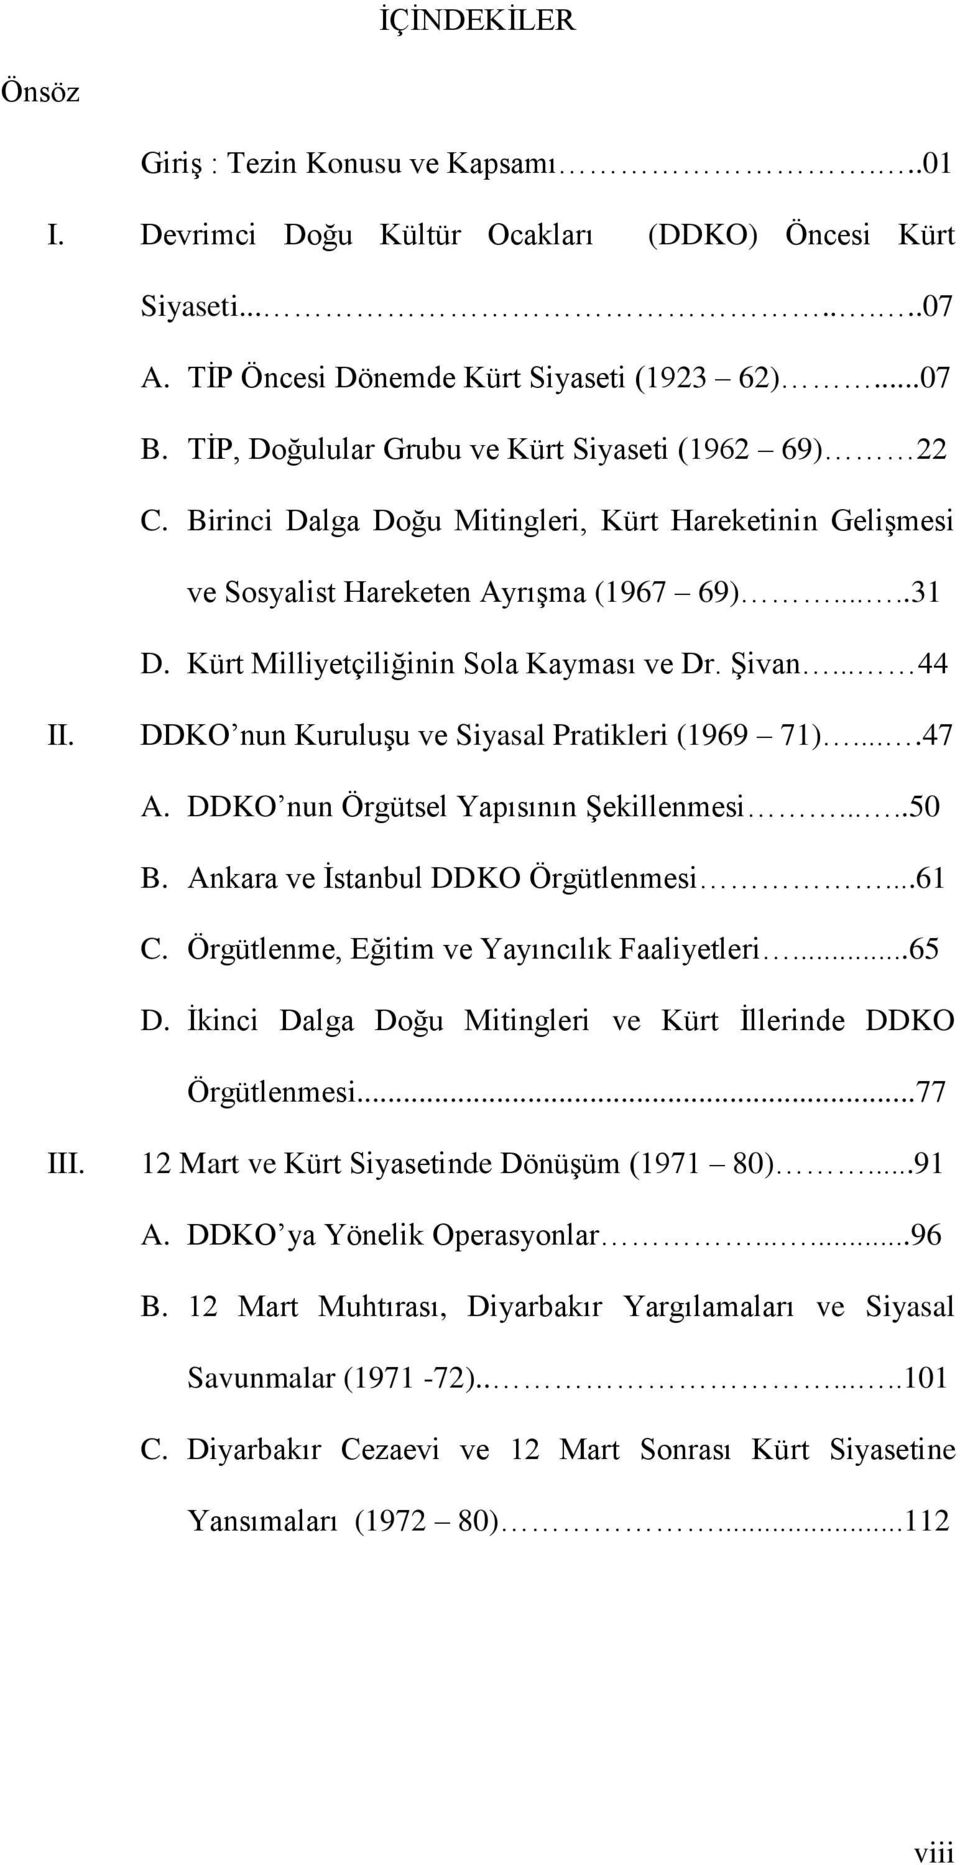 Kürt Milliyetçiliğinin Sola Kayması ve Dr. Şivan... 44 II. DDKO nun Kuruluşu ve Siyasal Pratikleri (1969 71)....47 A. DDKO nun Örgütsel Yapısının Şekillenmesi.....50 B.